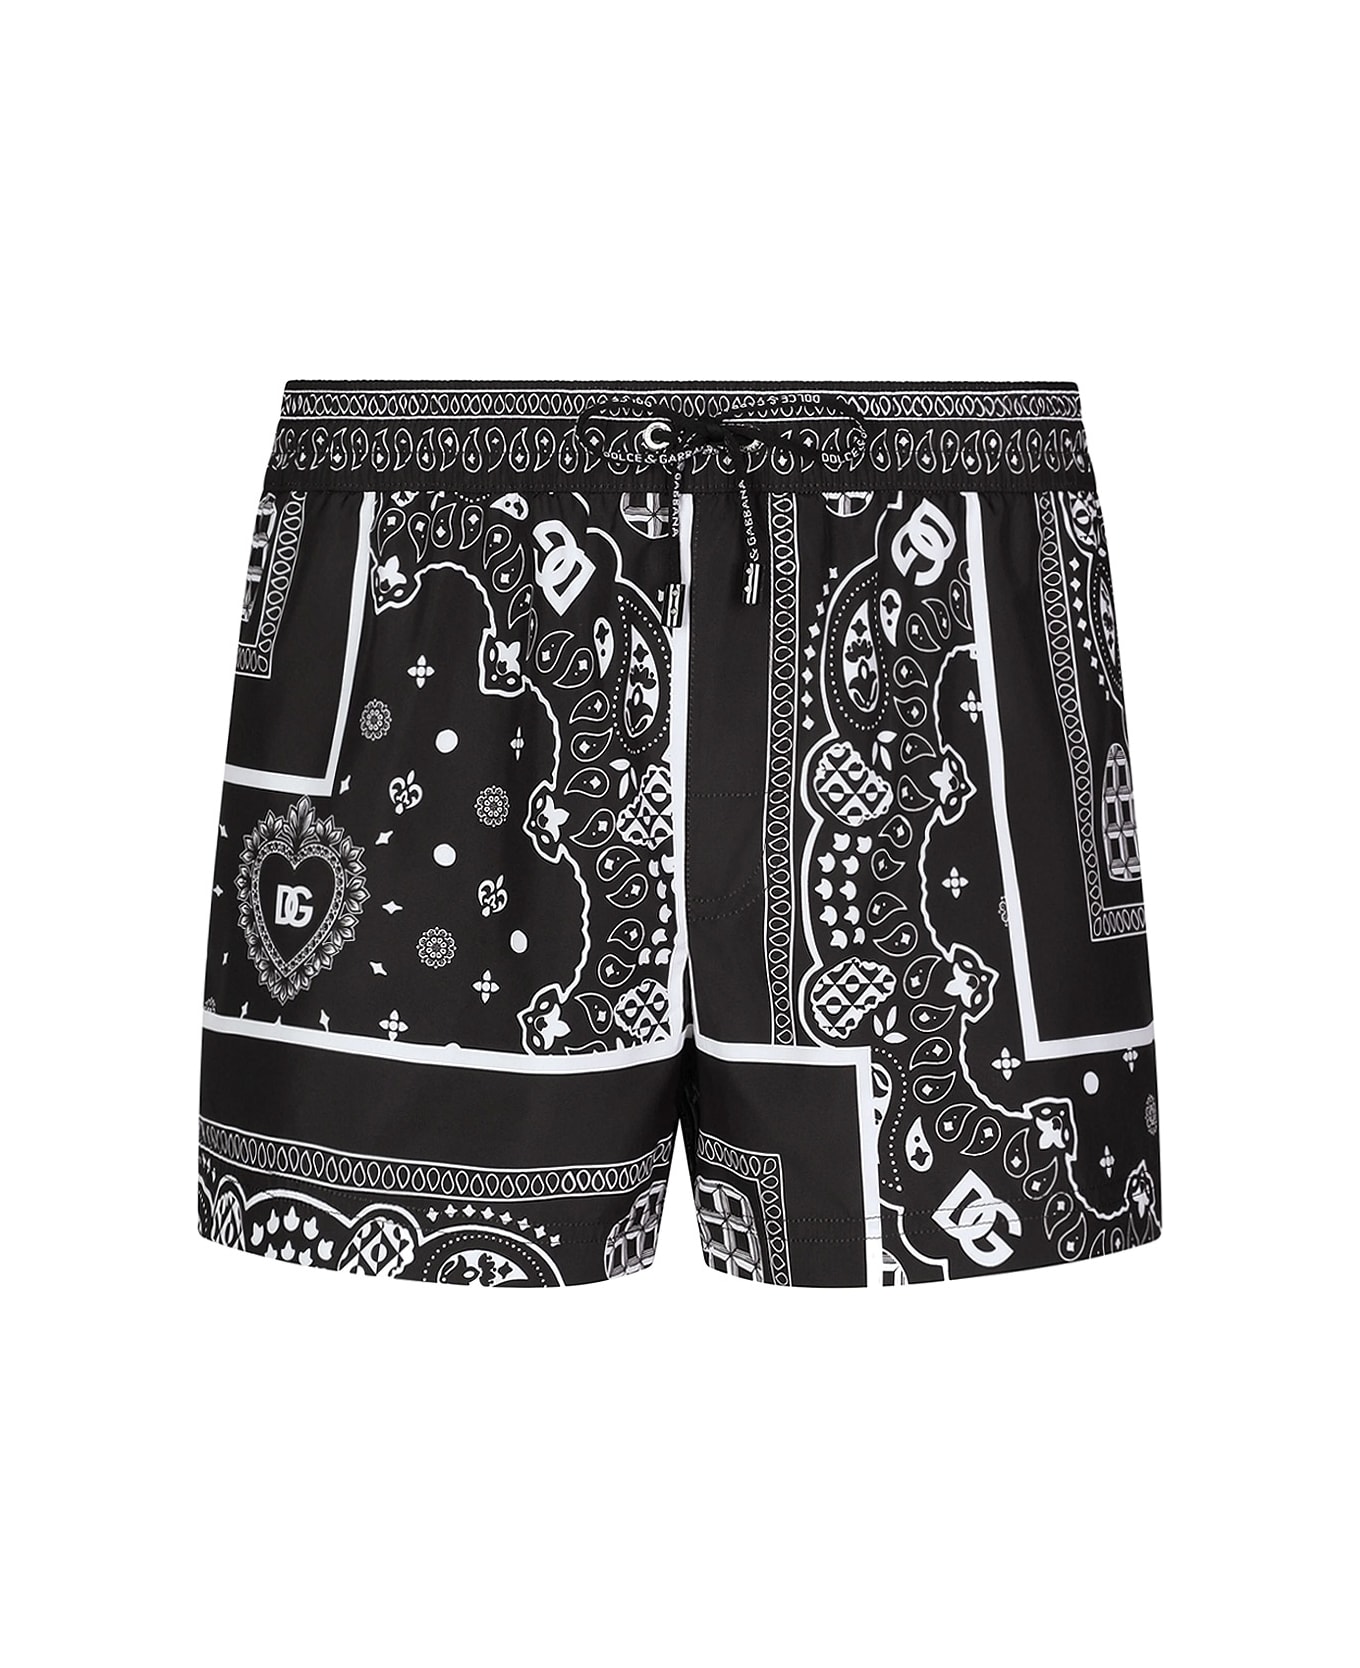 Dolce & Gabbana Bandana Print Boxer Shorts - Bandana